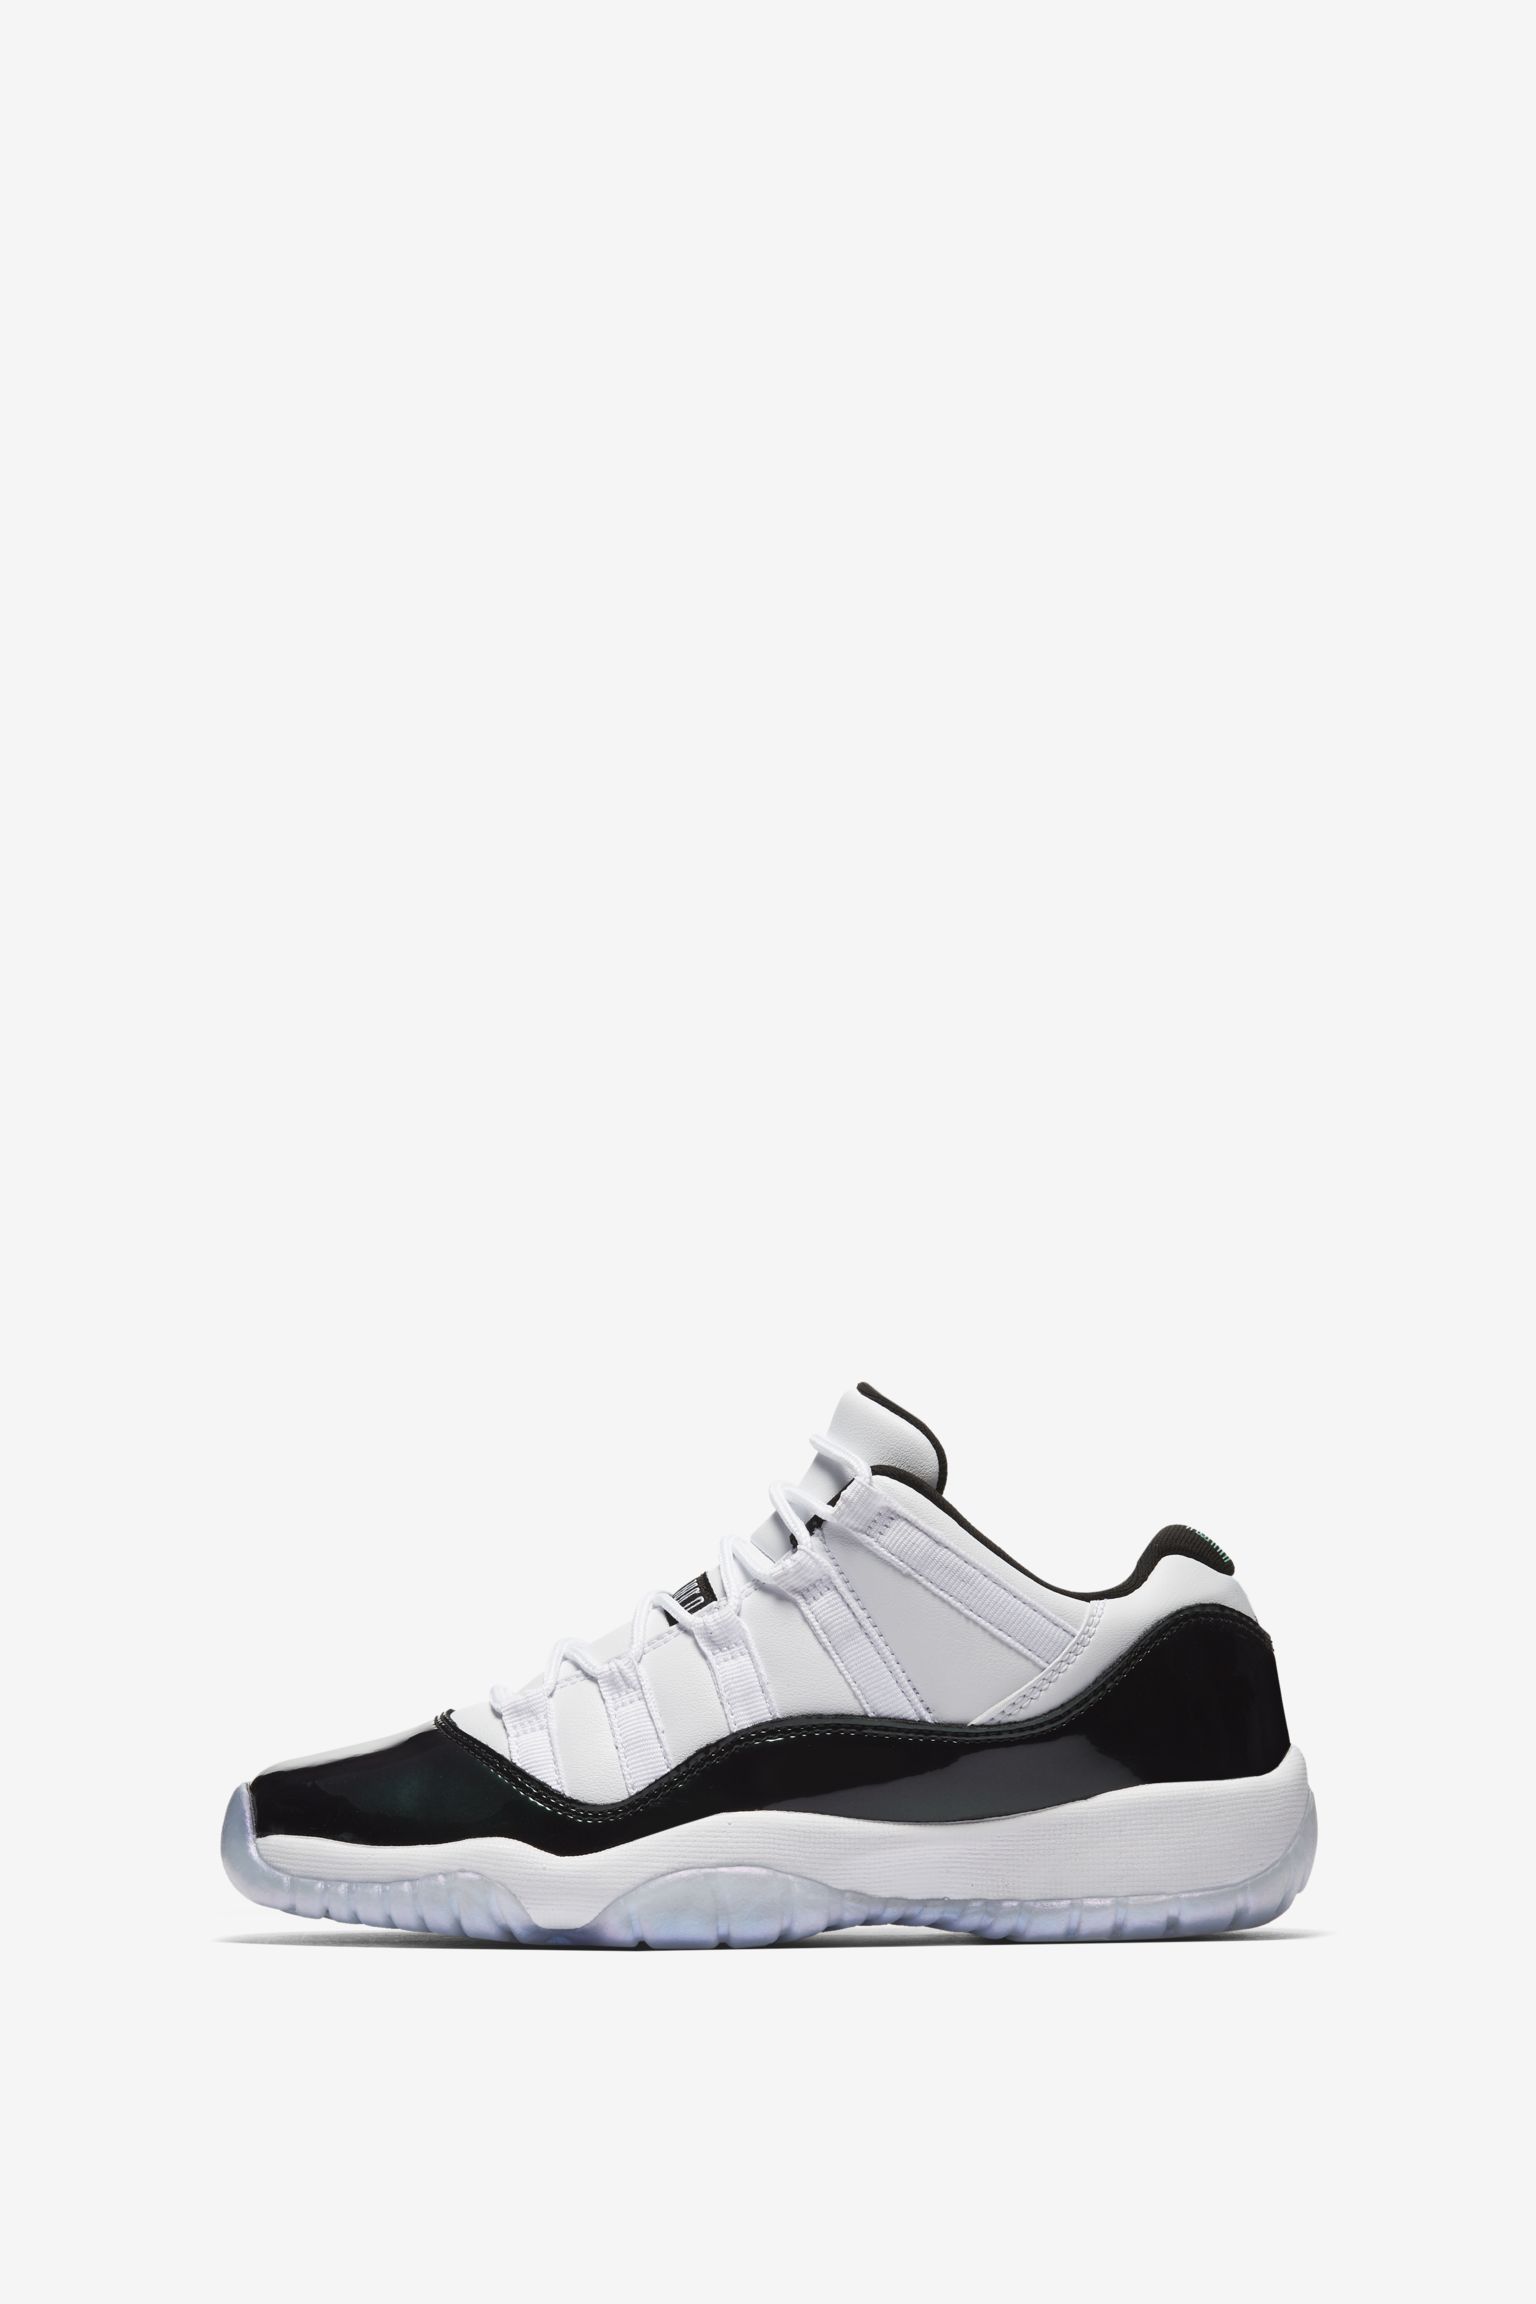 Air Jordan 11 Low 'Iridescent' Release Date. Nike SNKRS